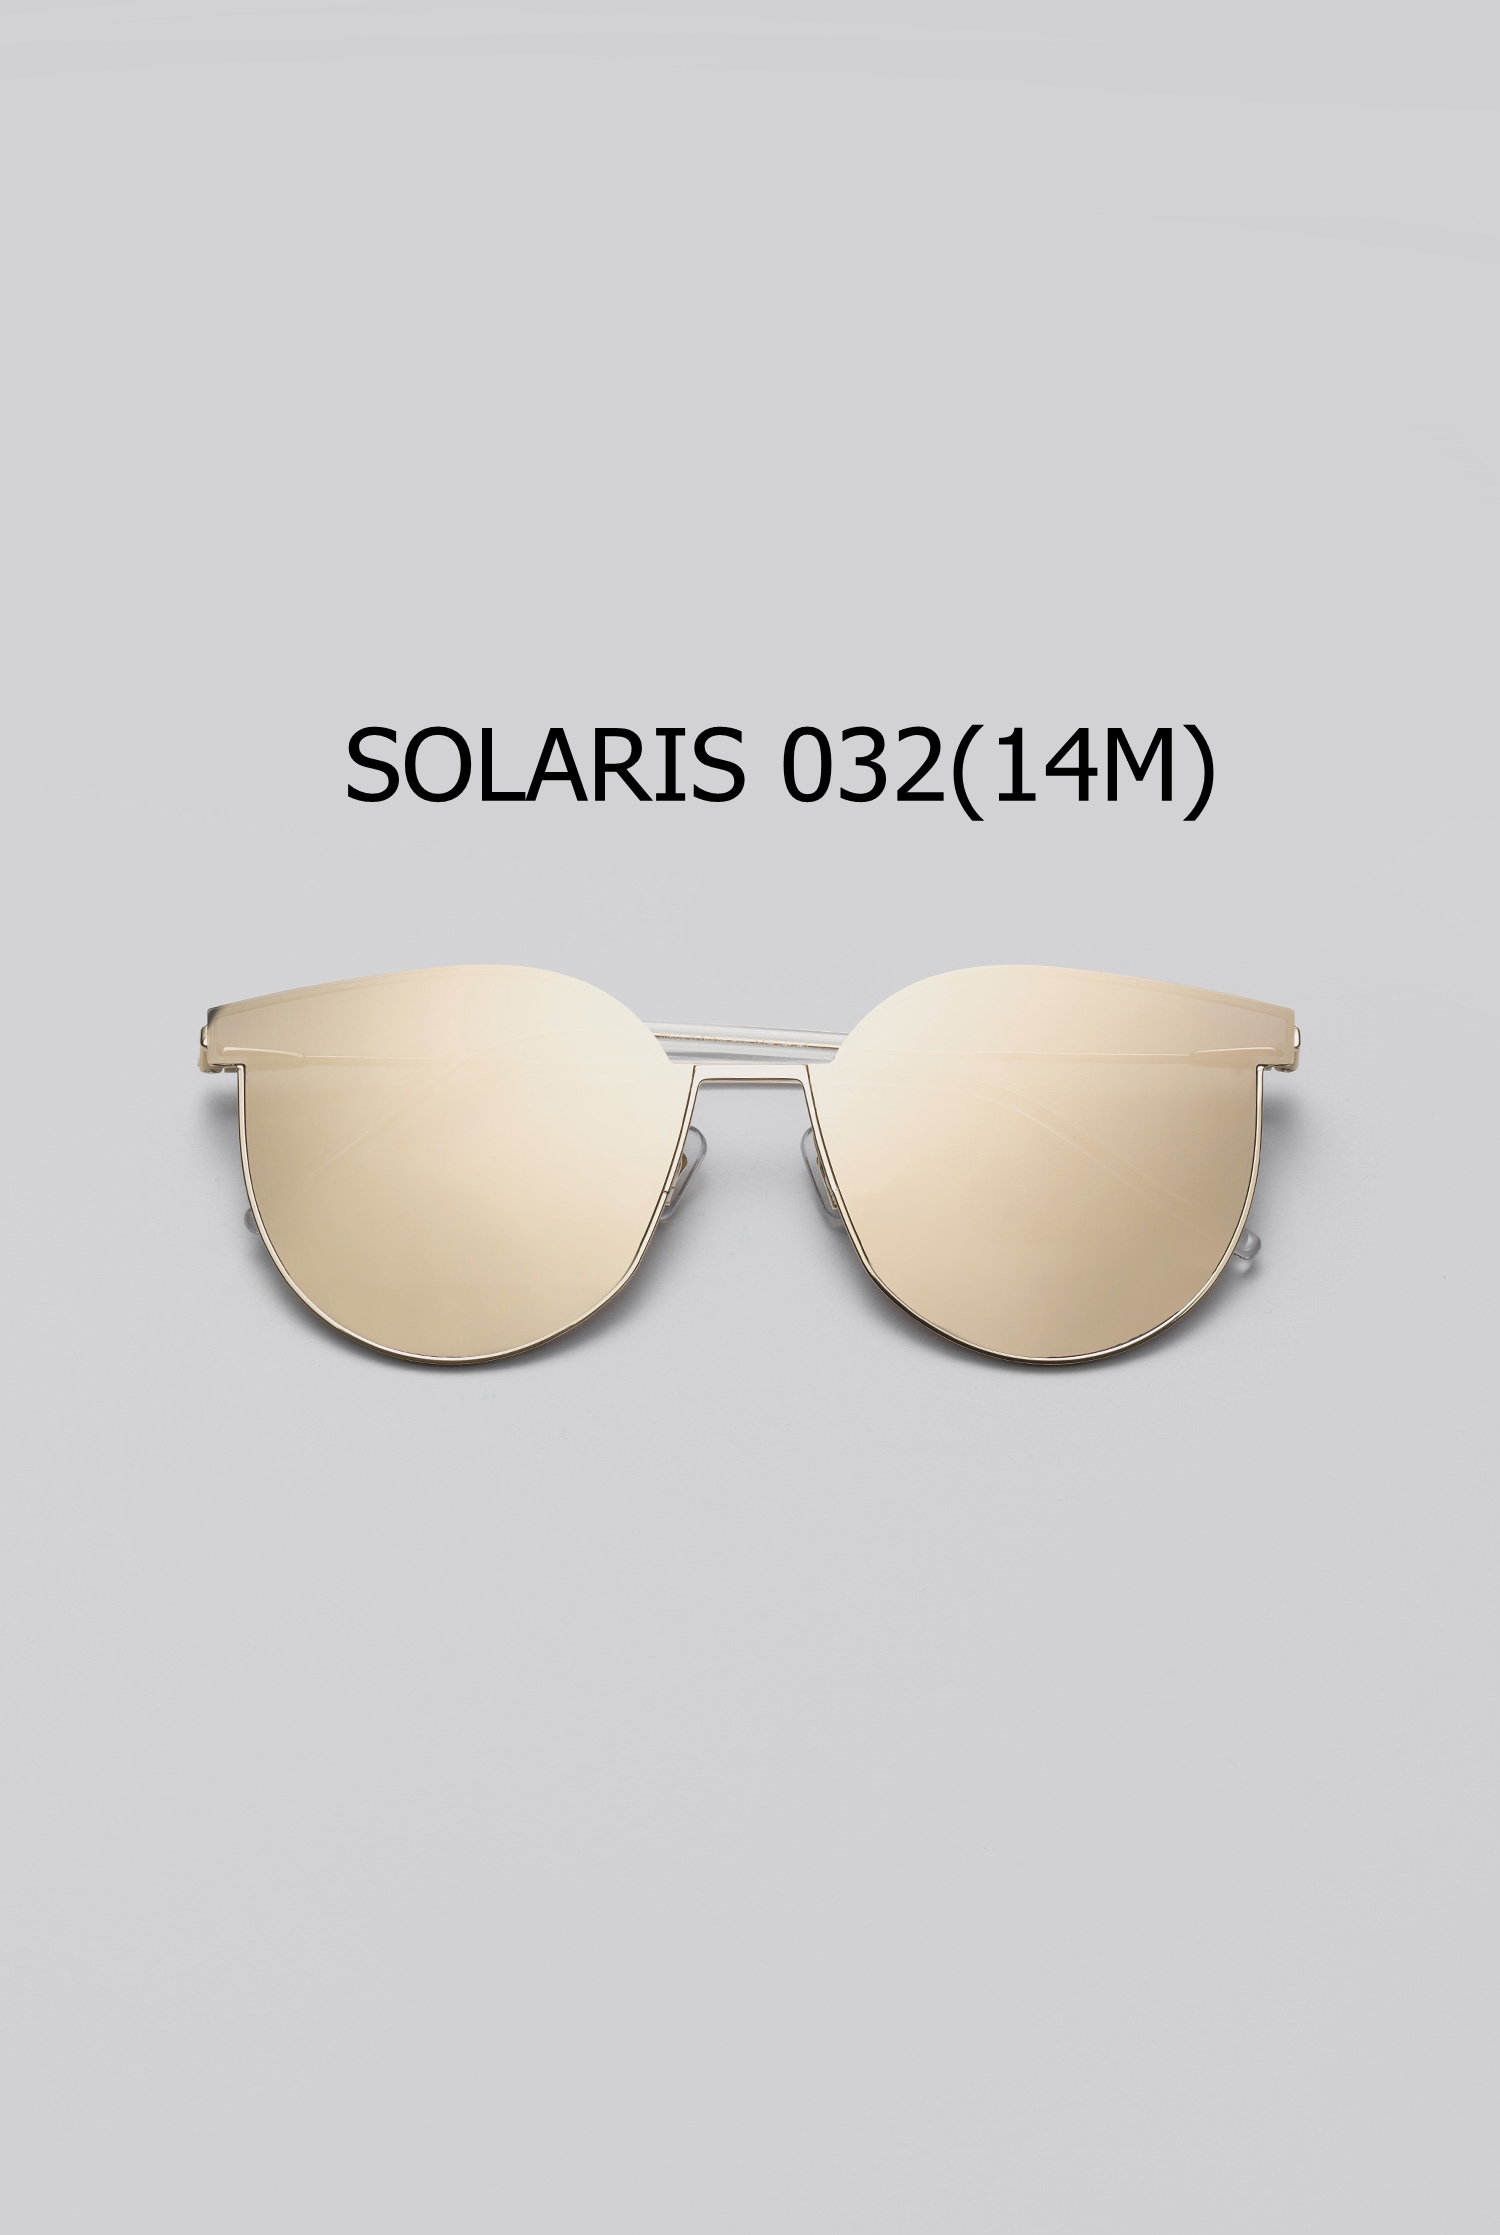 SOLARIS 032(14M)